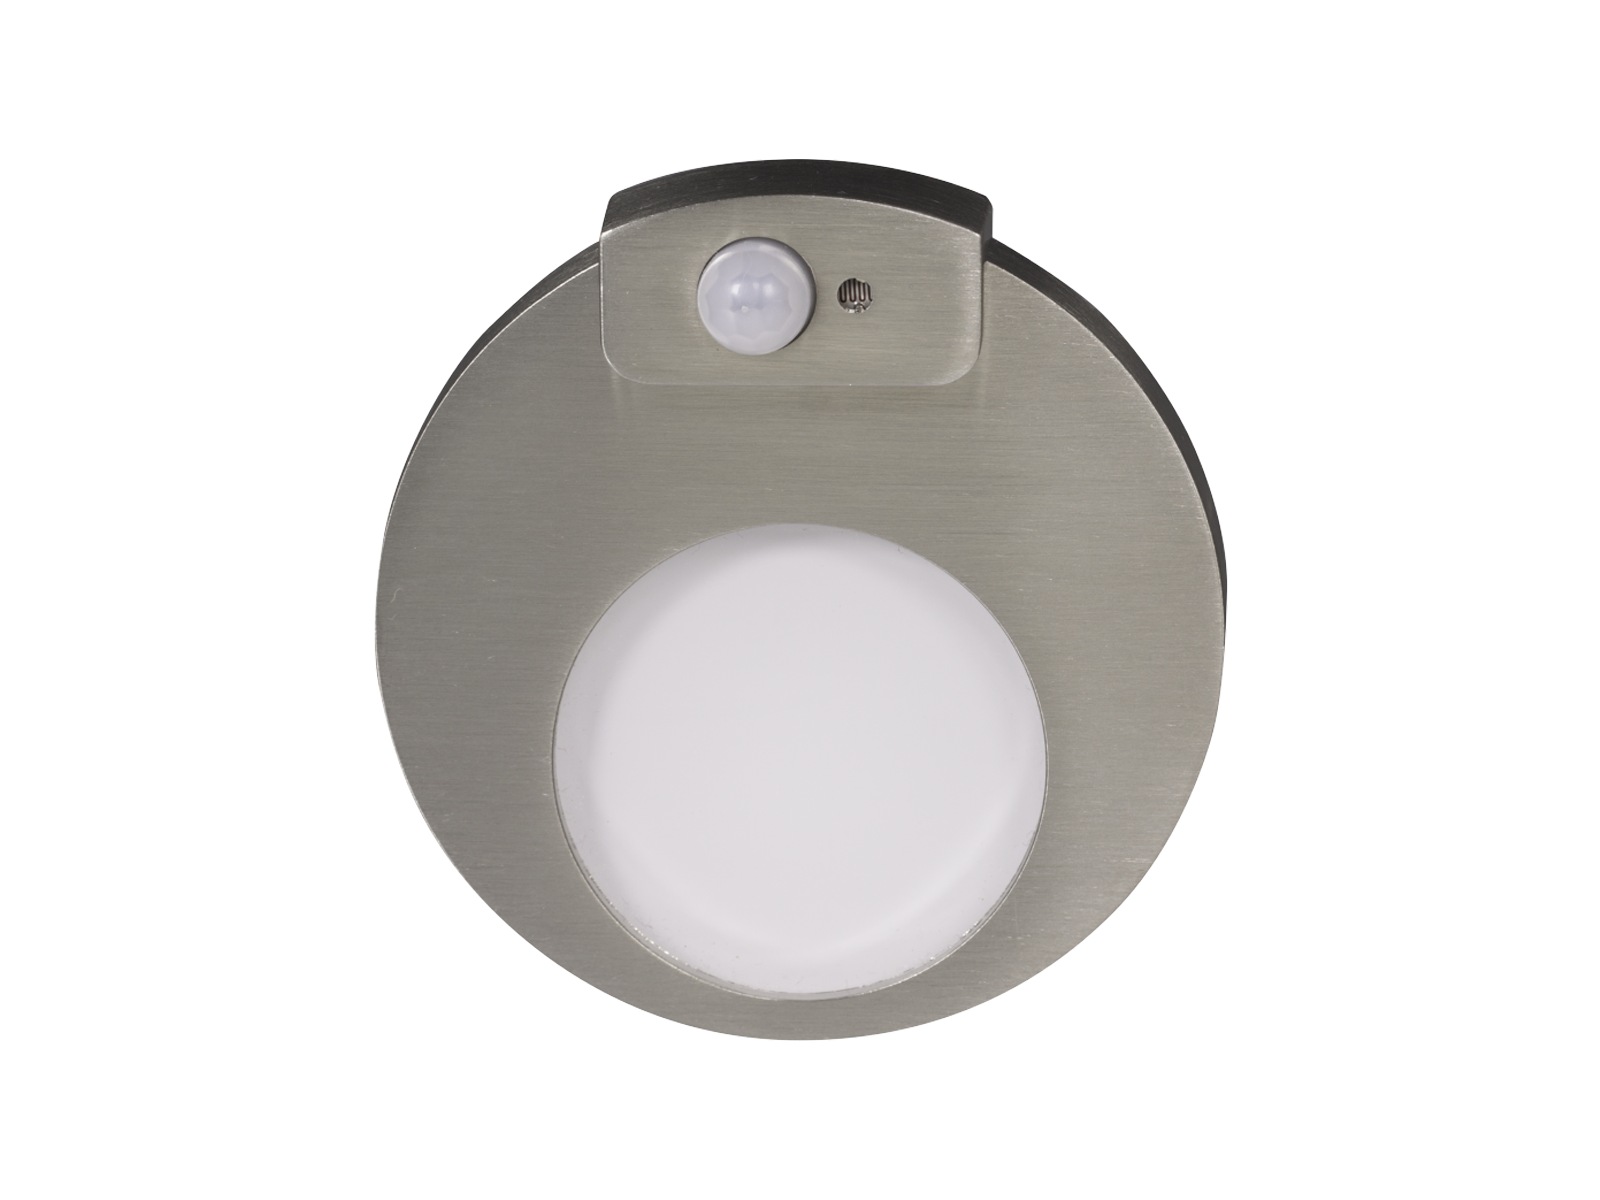 Svítidlo LED se senzorem pod omítku LEDIX MUNA 14V DC, nerezová ocel, teplá bílá, IP20